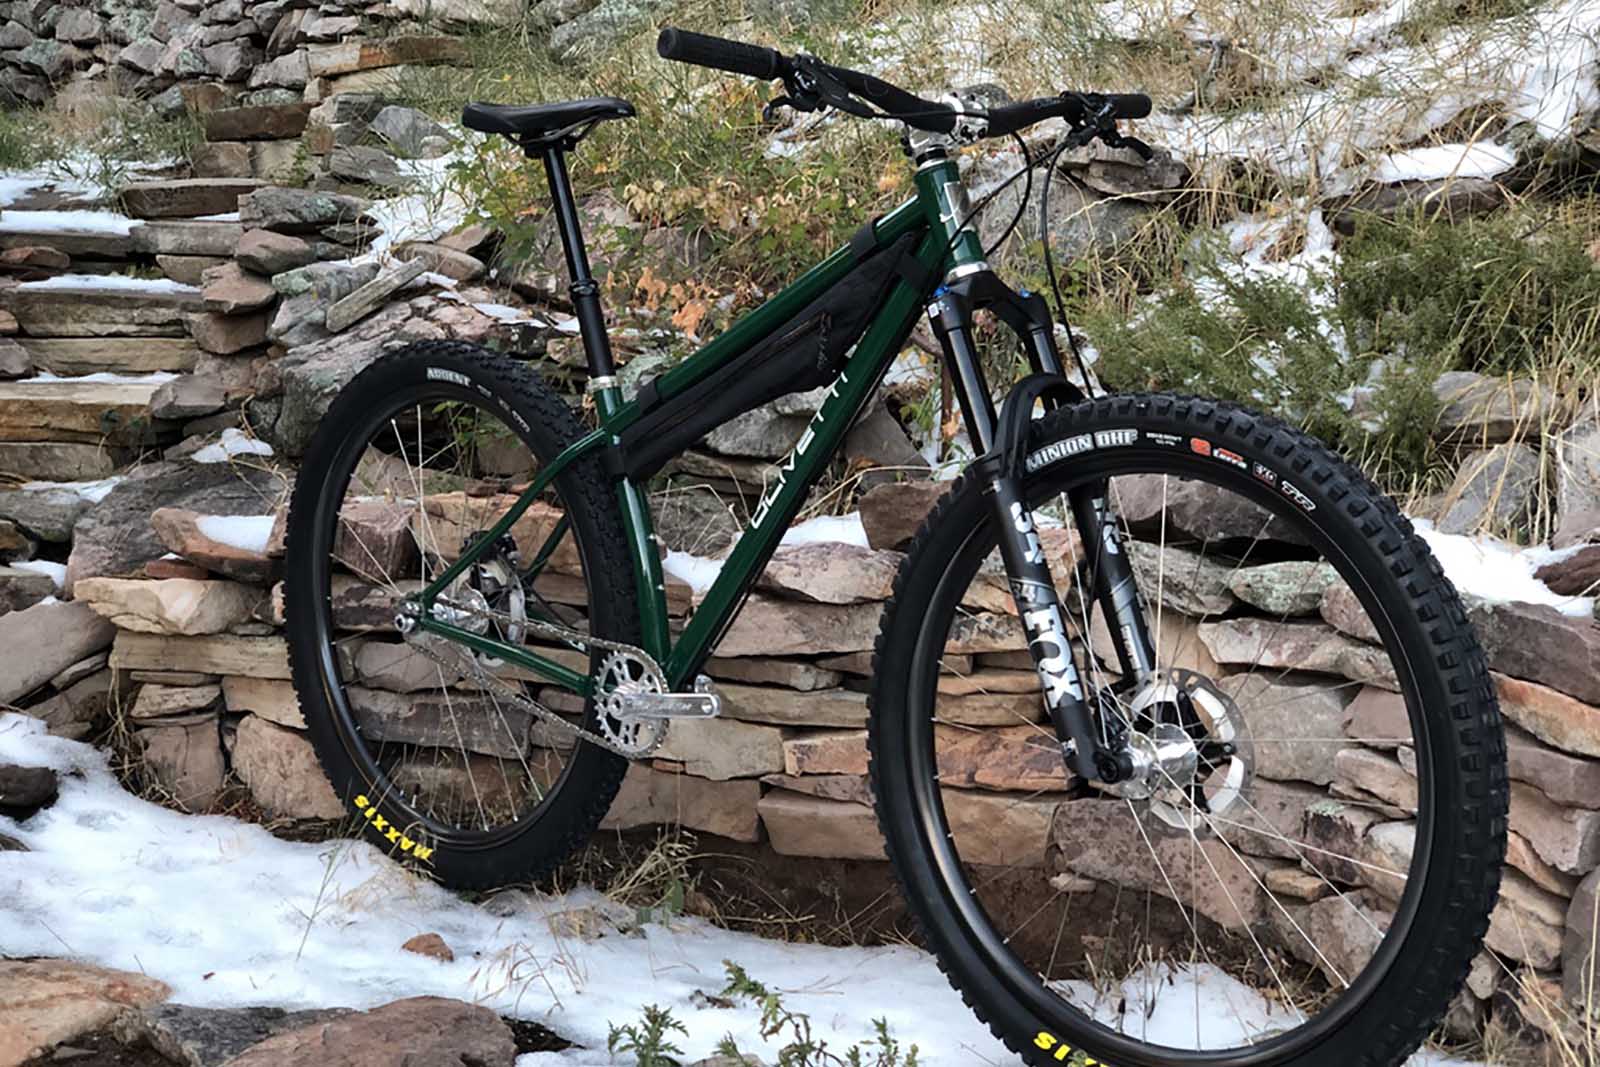 an olivetti bike against a stone background